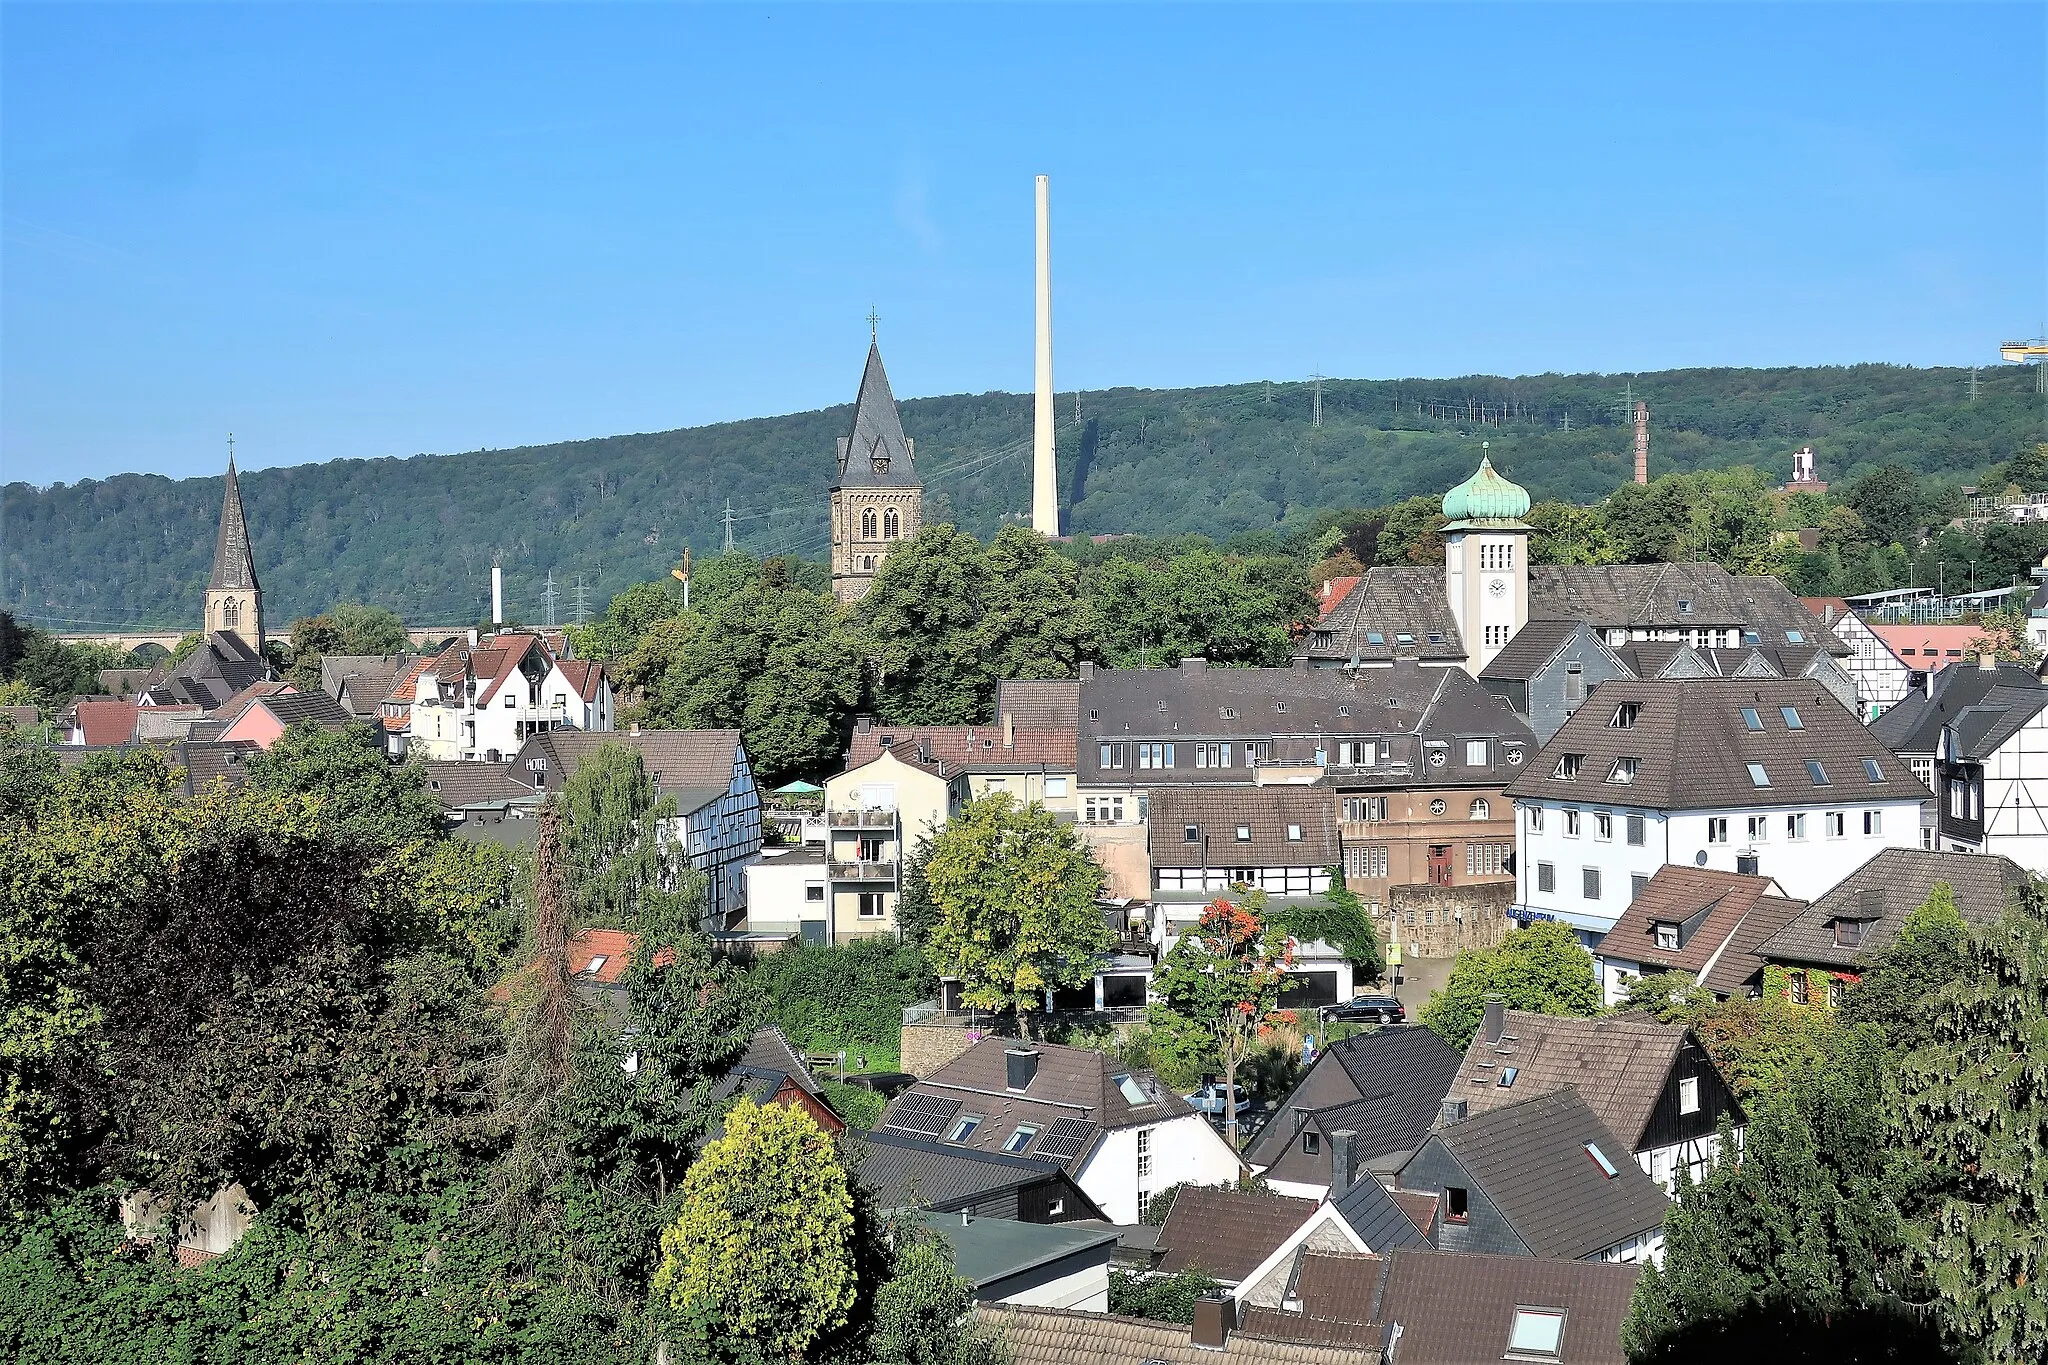 Photo showing: Blick auf die Altstadt von Herdecke mit Rathausturm und den zwei Kirchtürmen. Im Hintergrund der Schornstein vom Cuno-Kraftwerk.